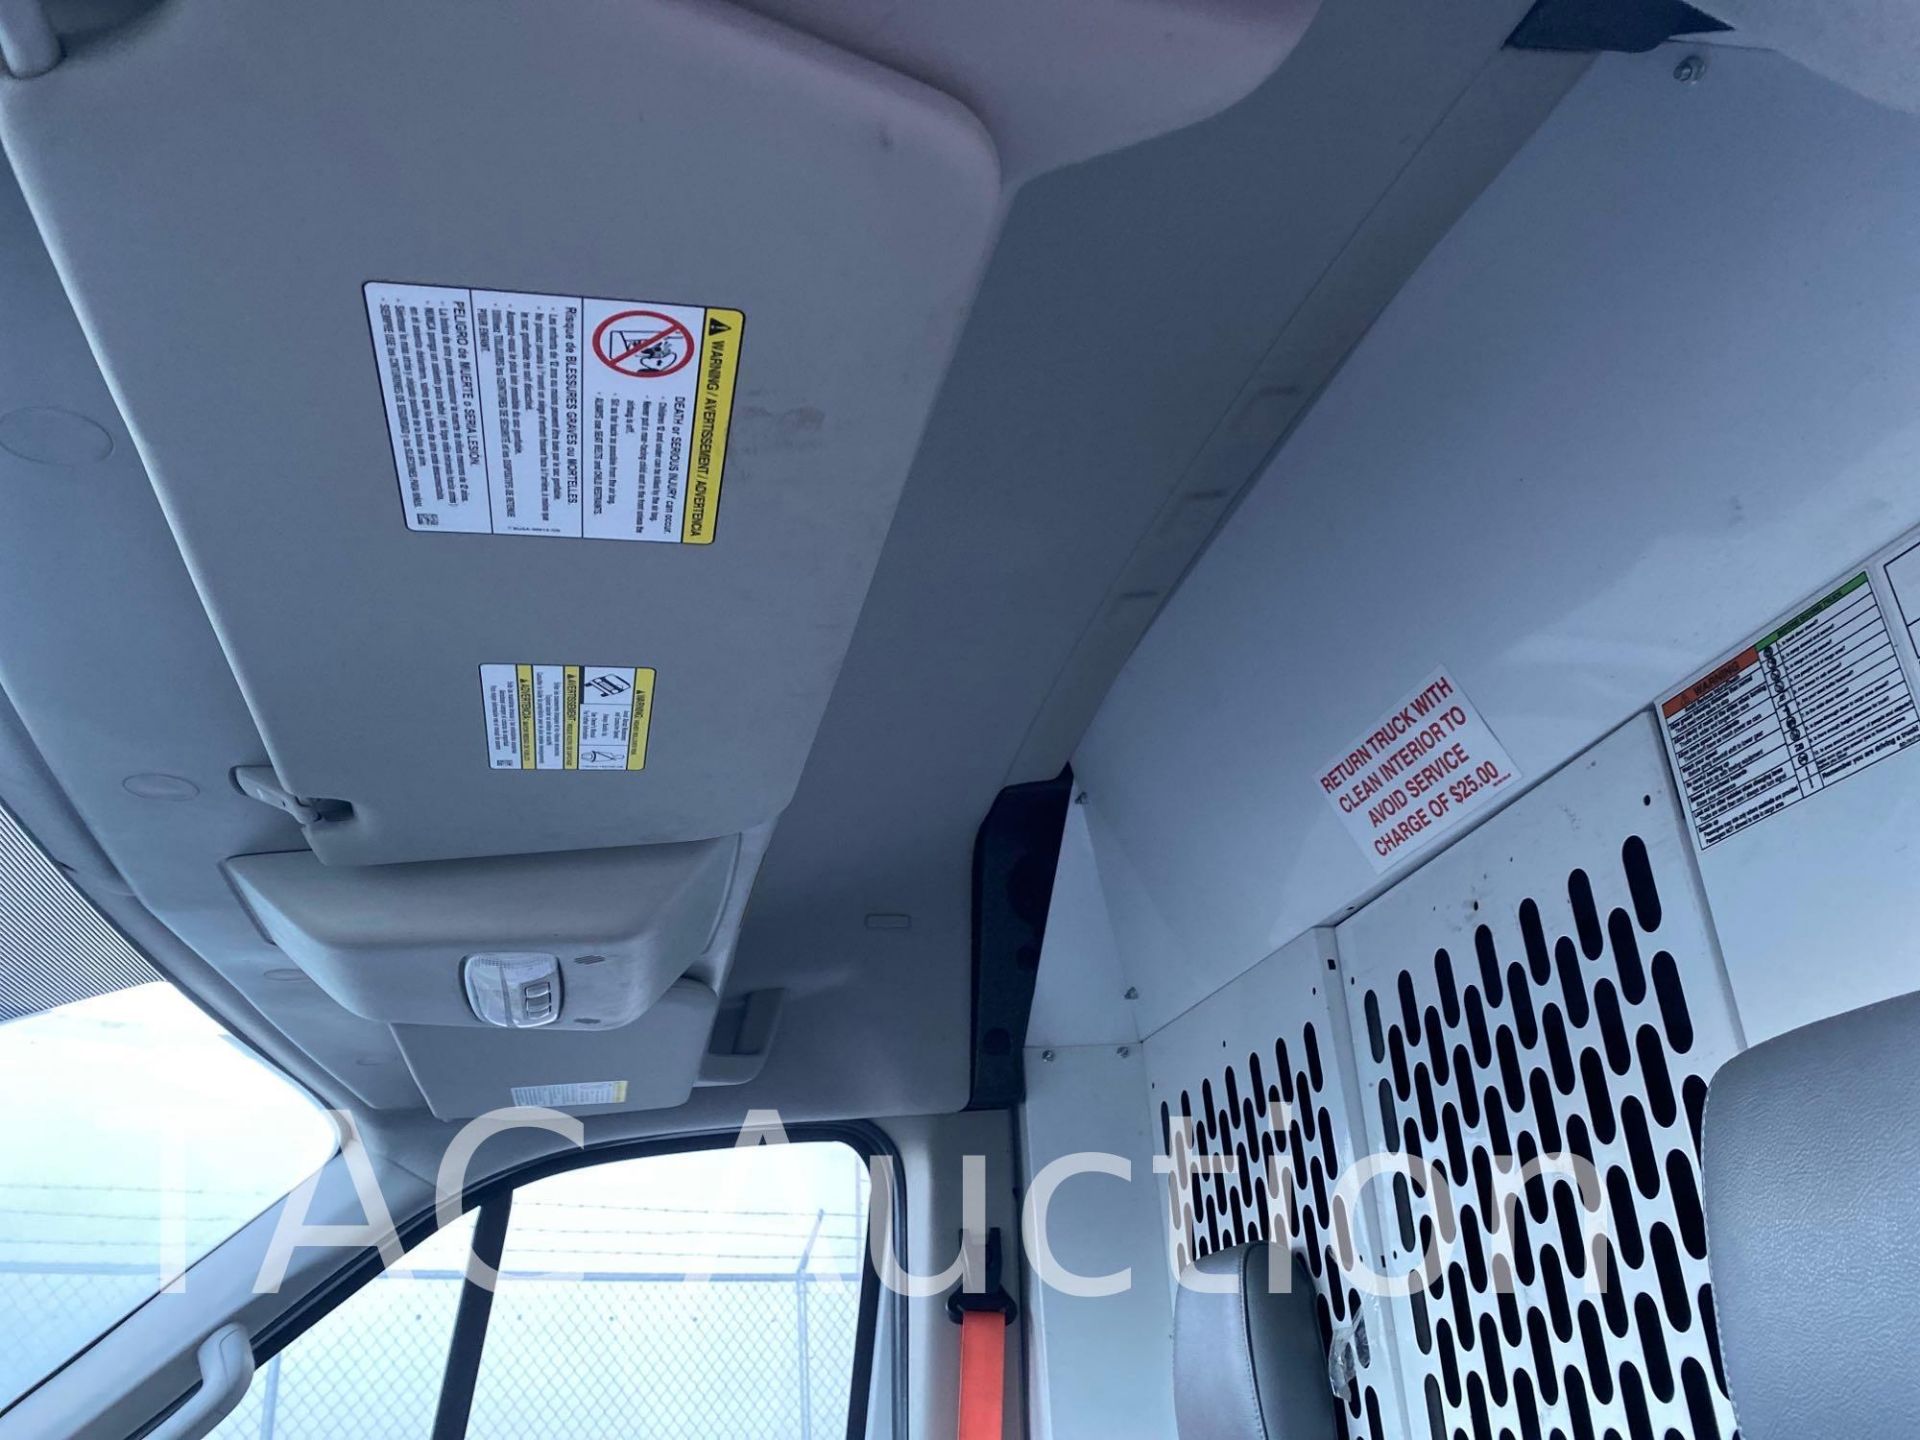 2019 Ford Transit 150 Cargo Van - Image 9 of 46